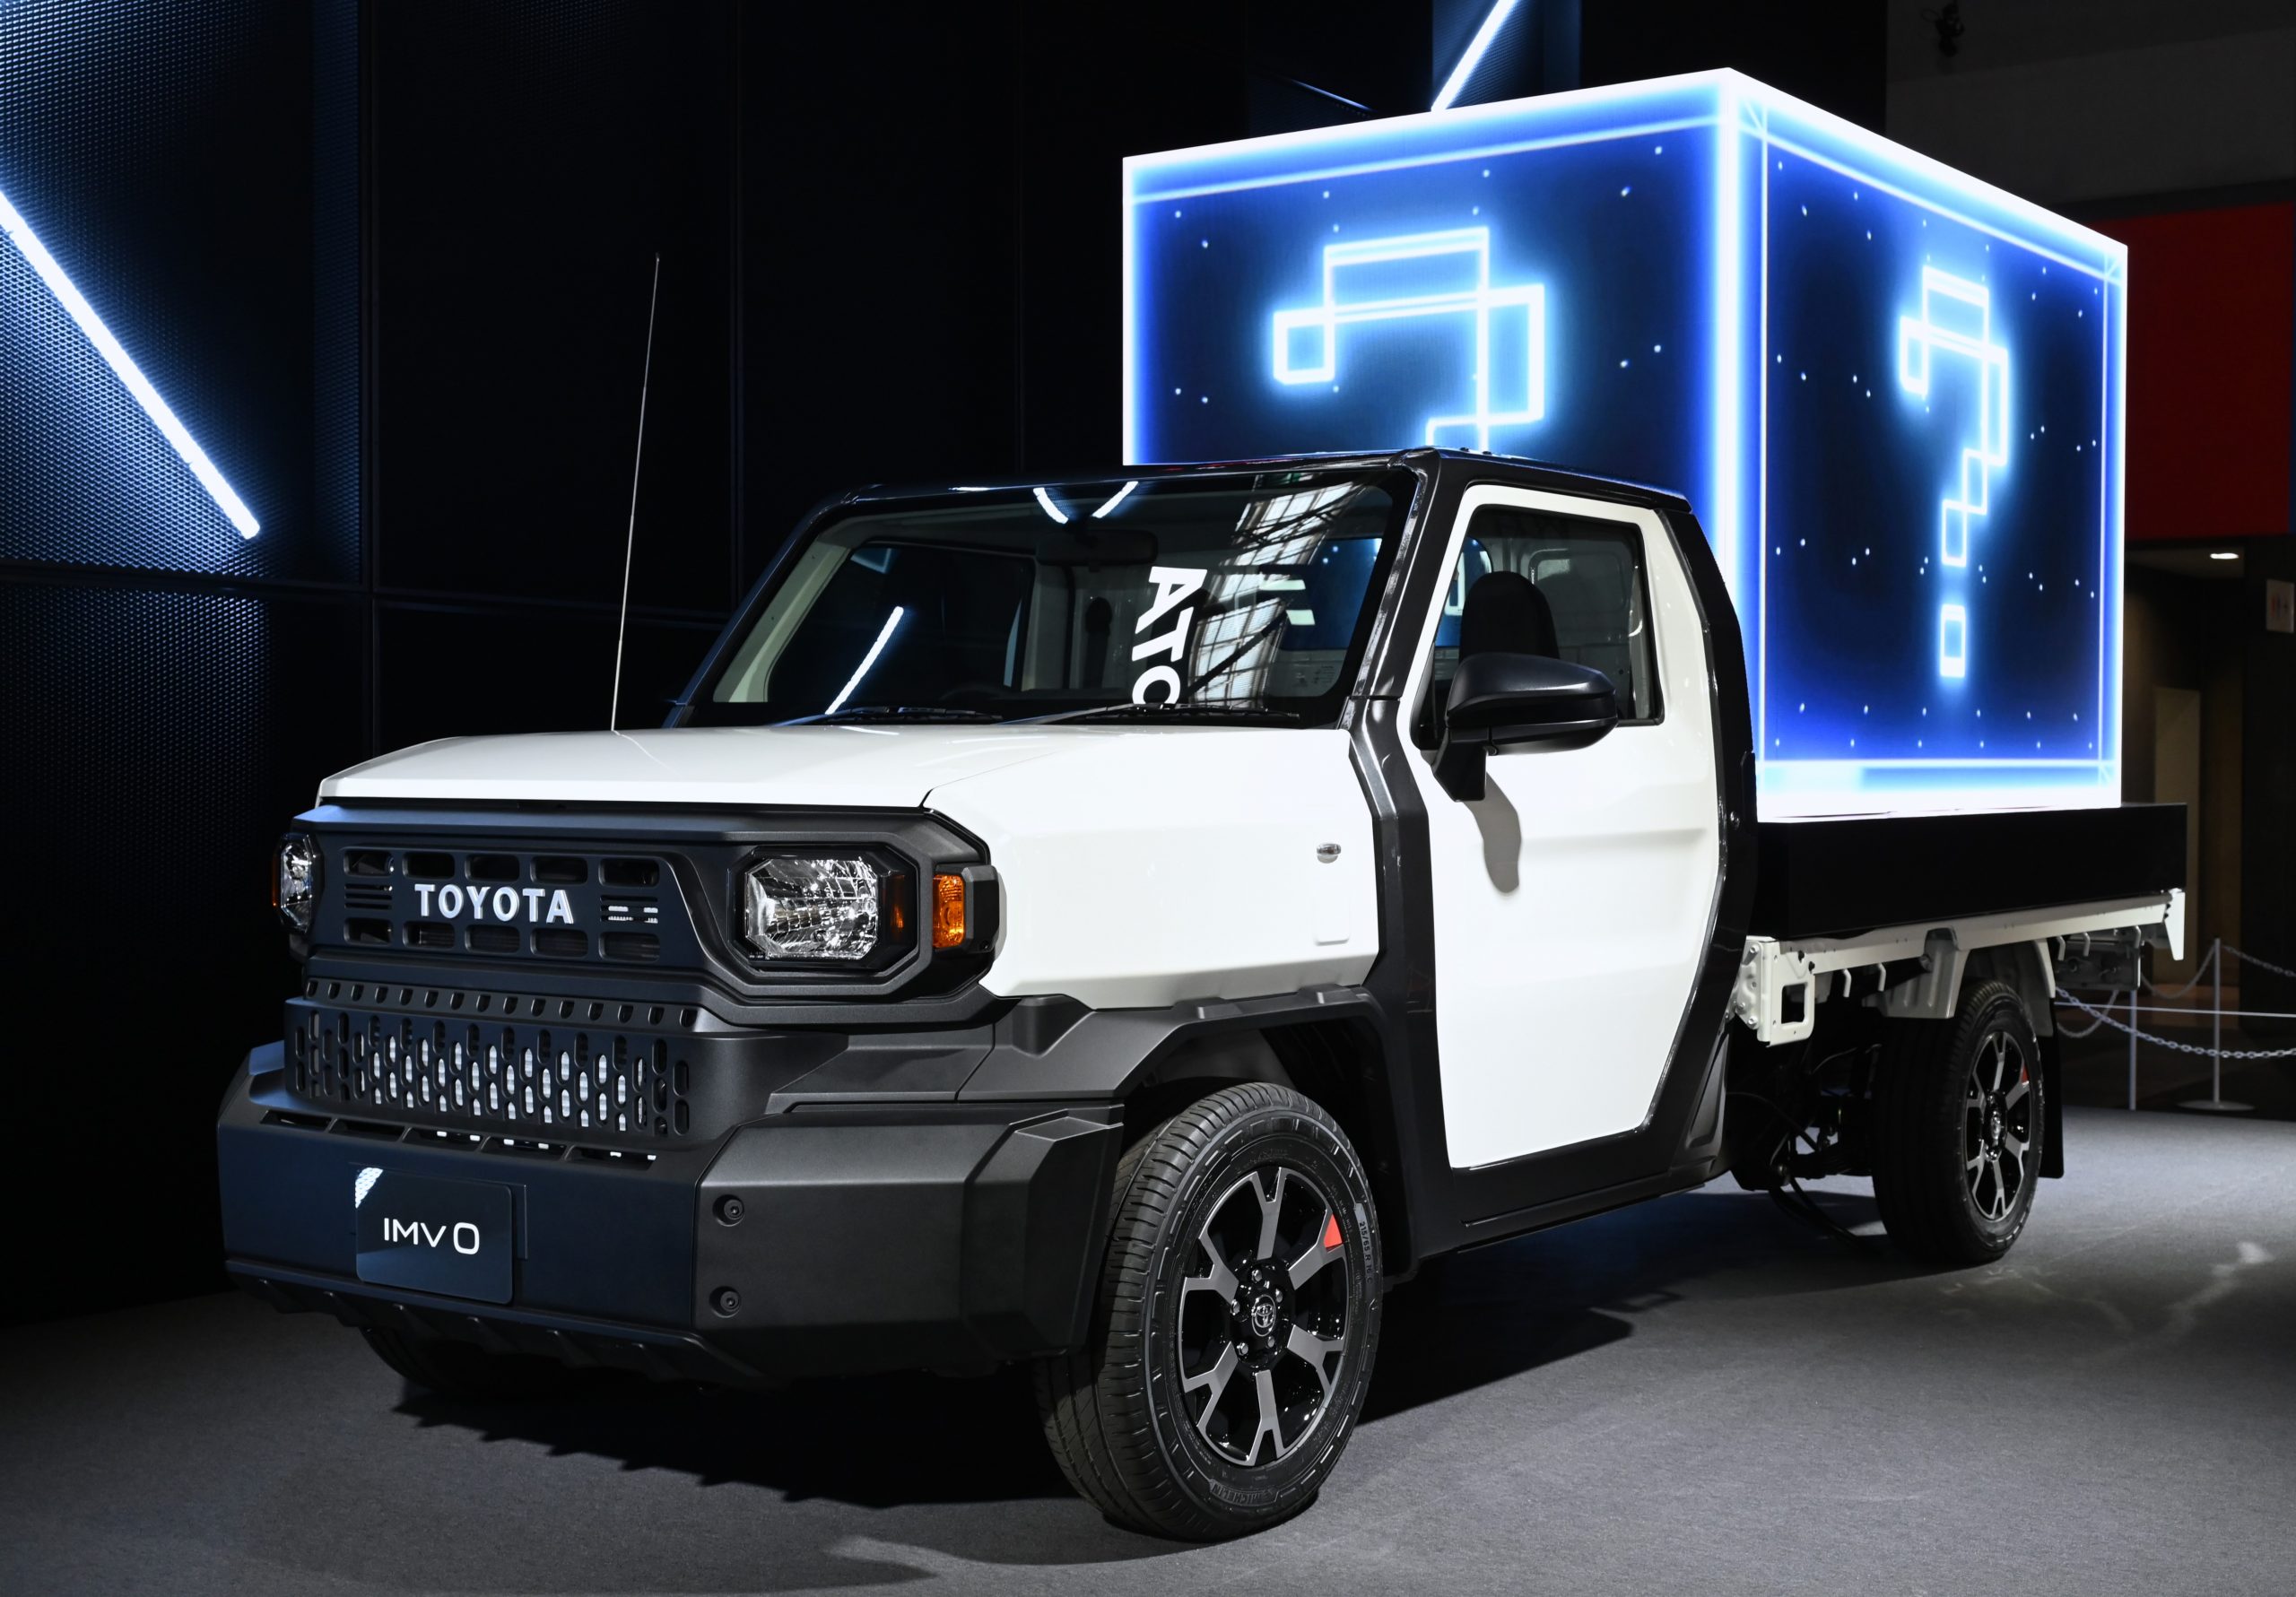 تويوتا تطرح شاحنة هايلكس تشامب الجديدة كلياً في آسيا بثلاثة محركات وتصميم عضلي 1